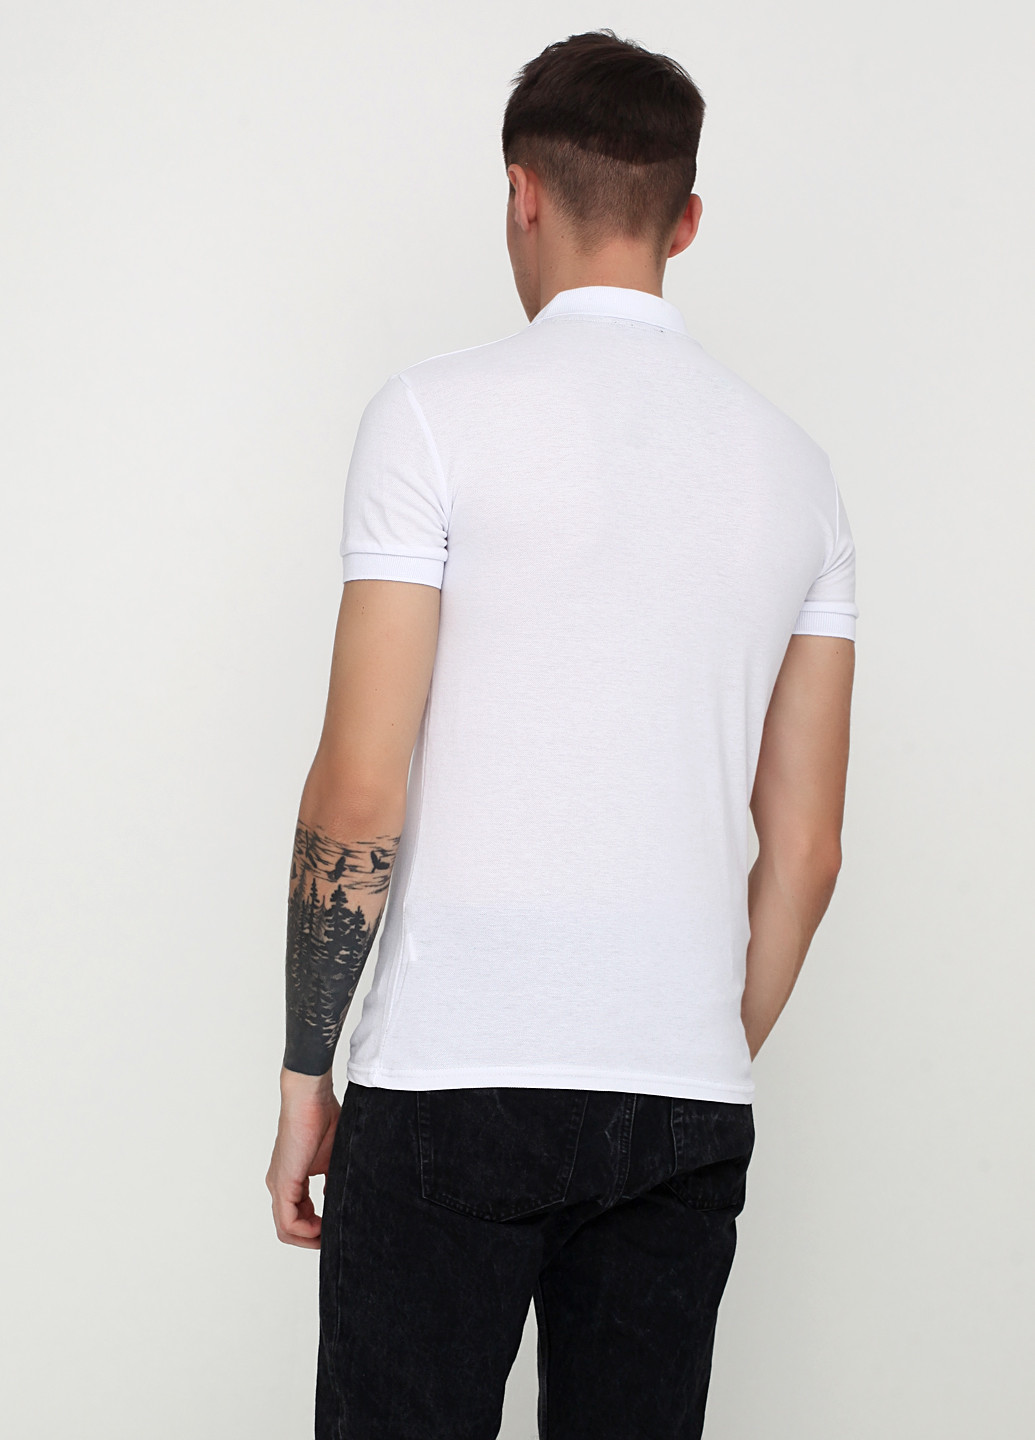 Белая футболка-поло для мужчин LEXSUS с логотипом